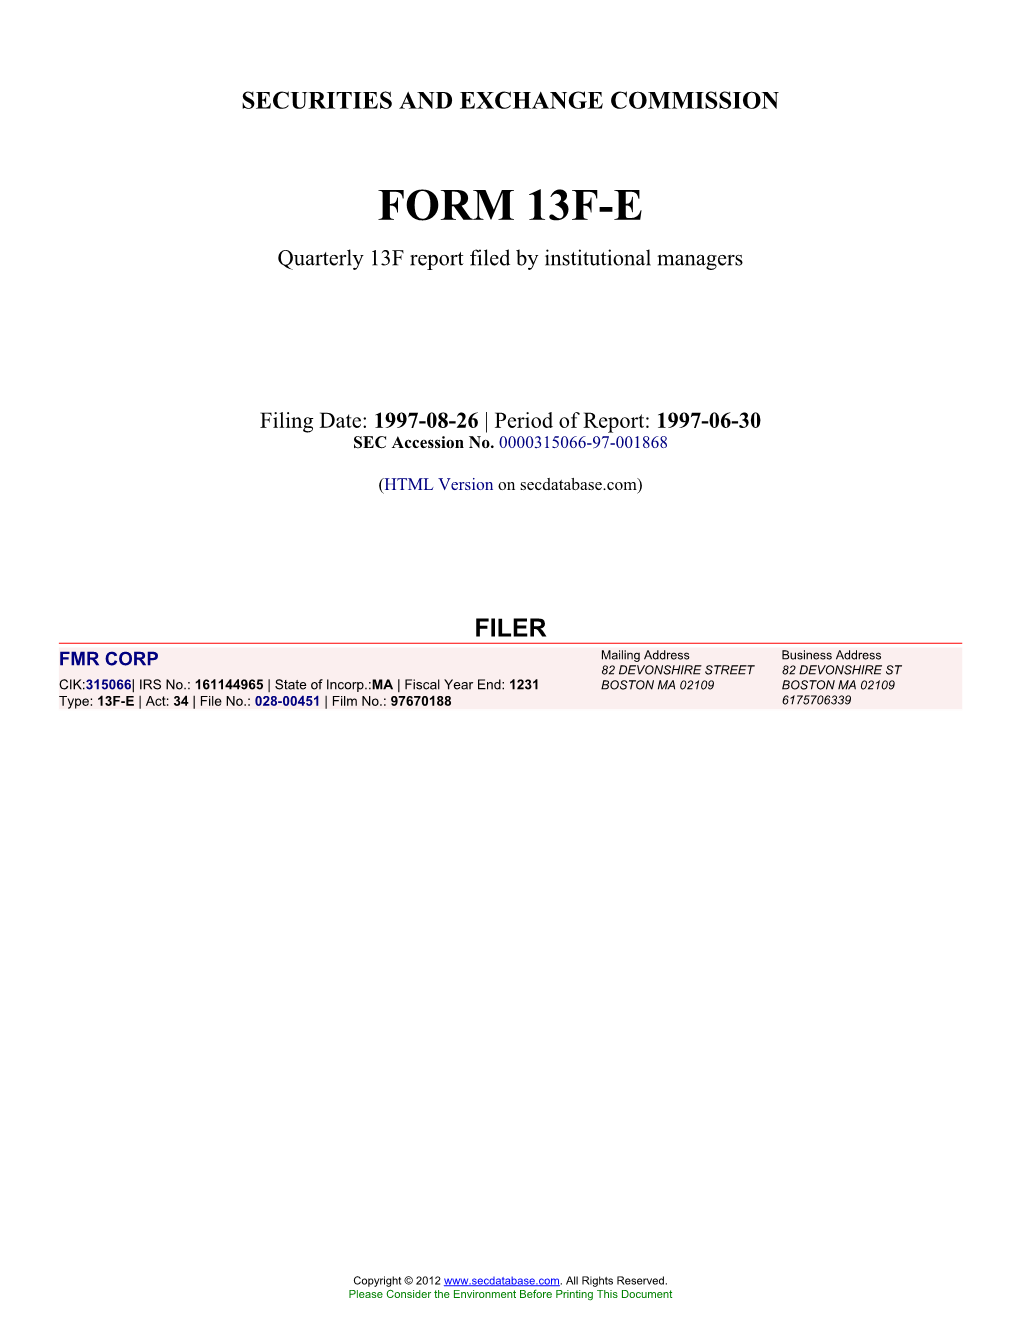 Form: 13F-E, Filing Date: 08/26/1997